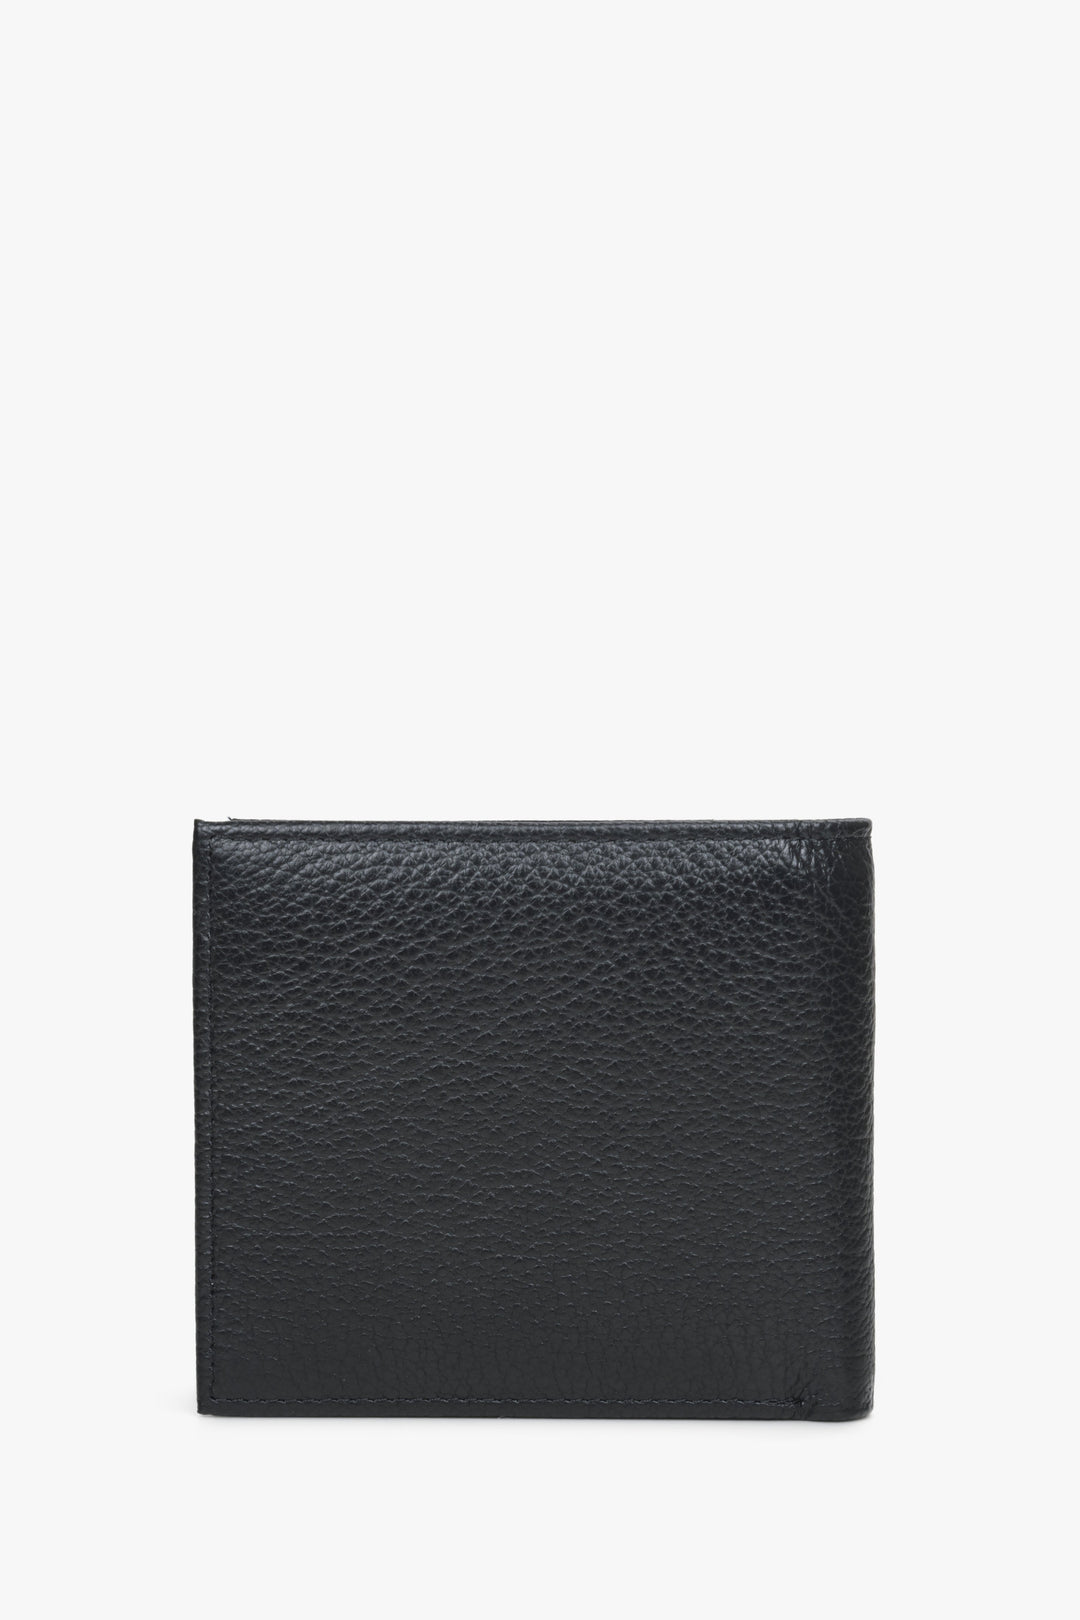 Black leather Estro men's wallet - back side